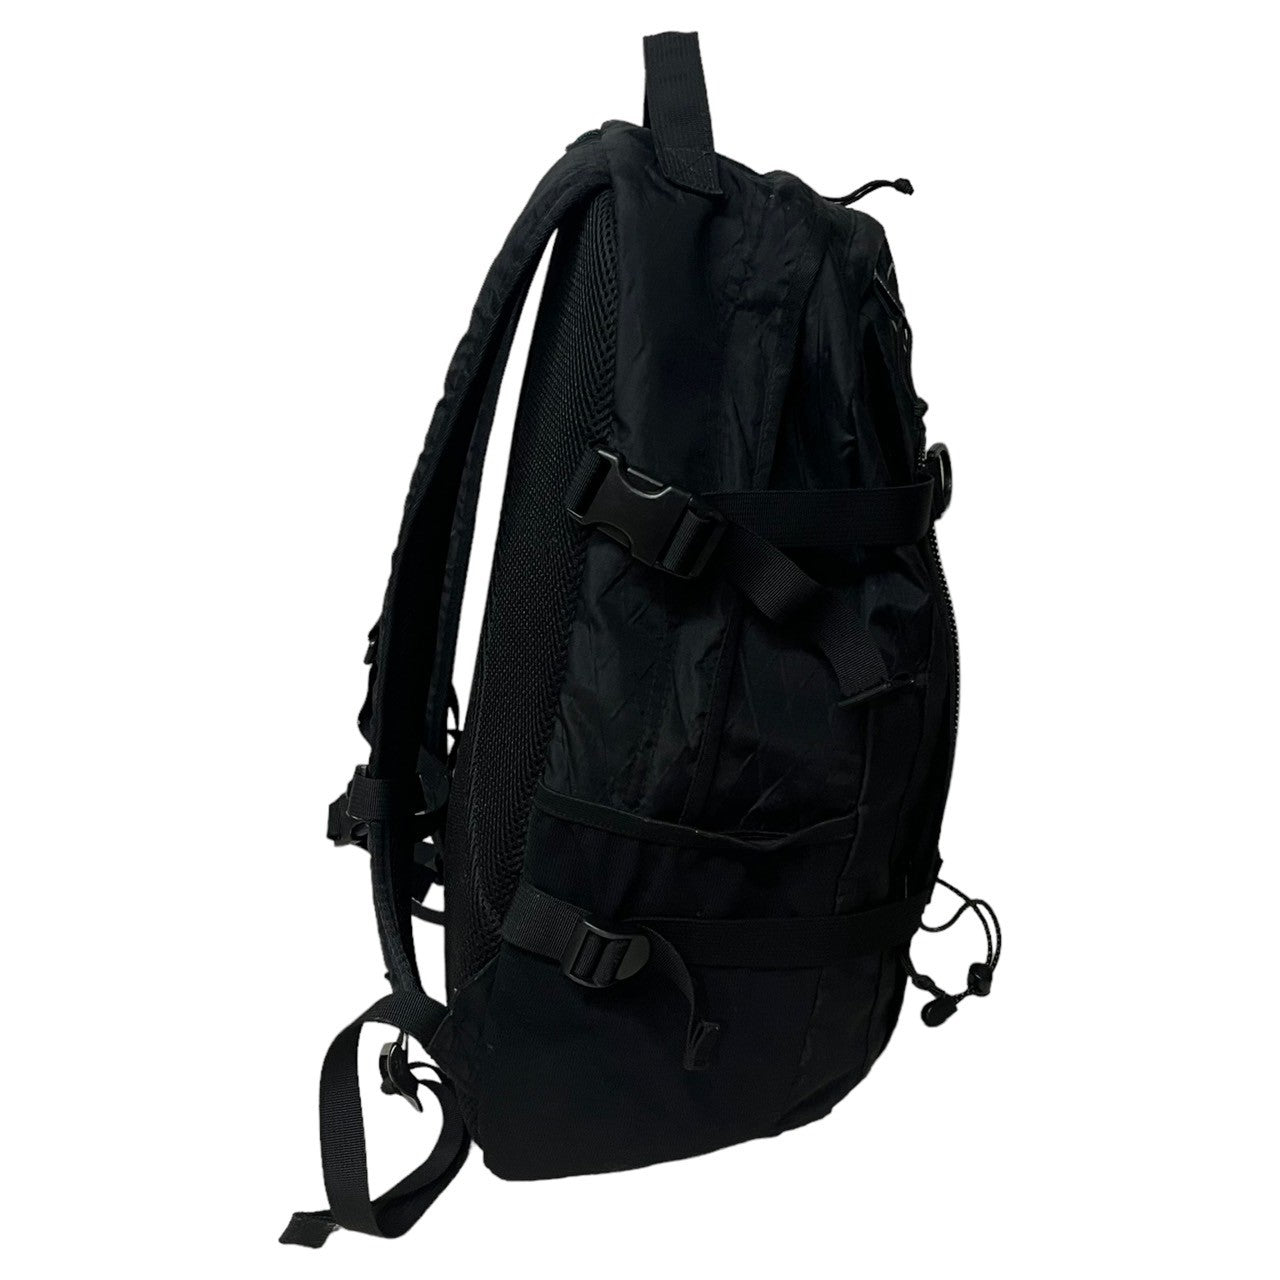 SUPREME(シュプリーム) 18FW Backpack "Black" ロゴ パックパック ブラック 18AW リュック バッグ デイパック